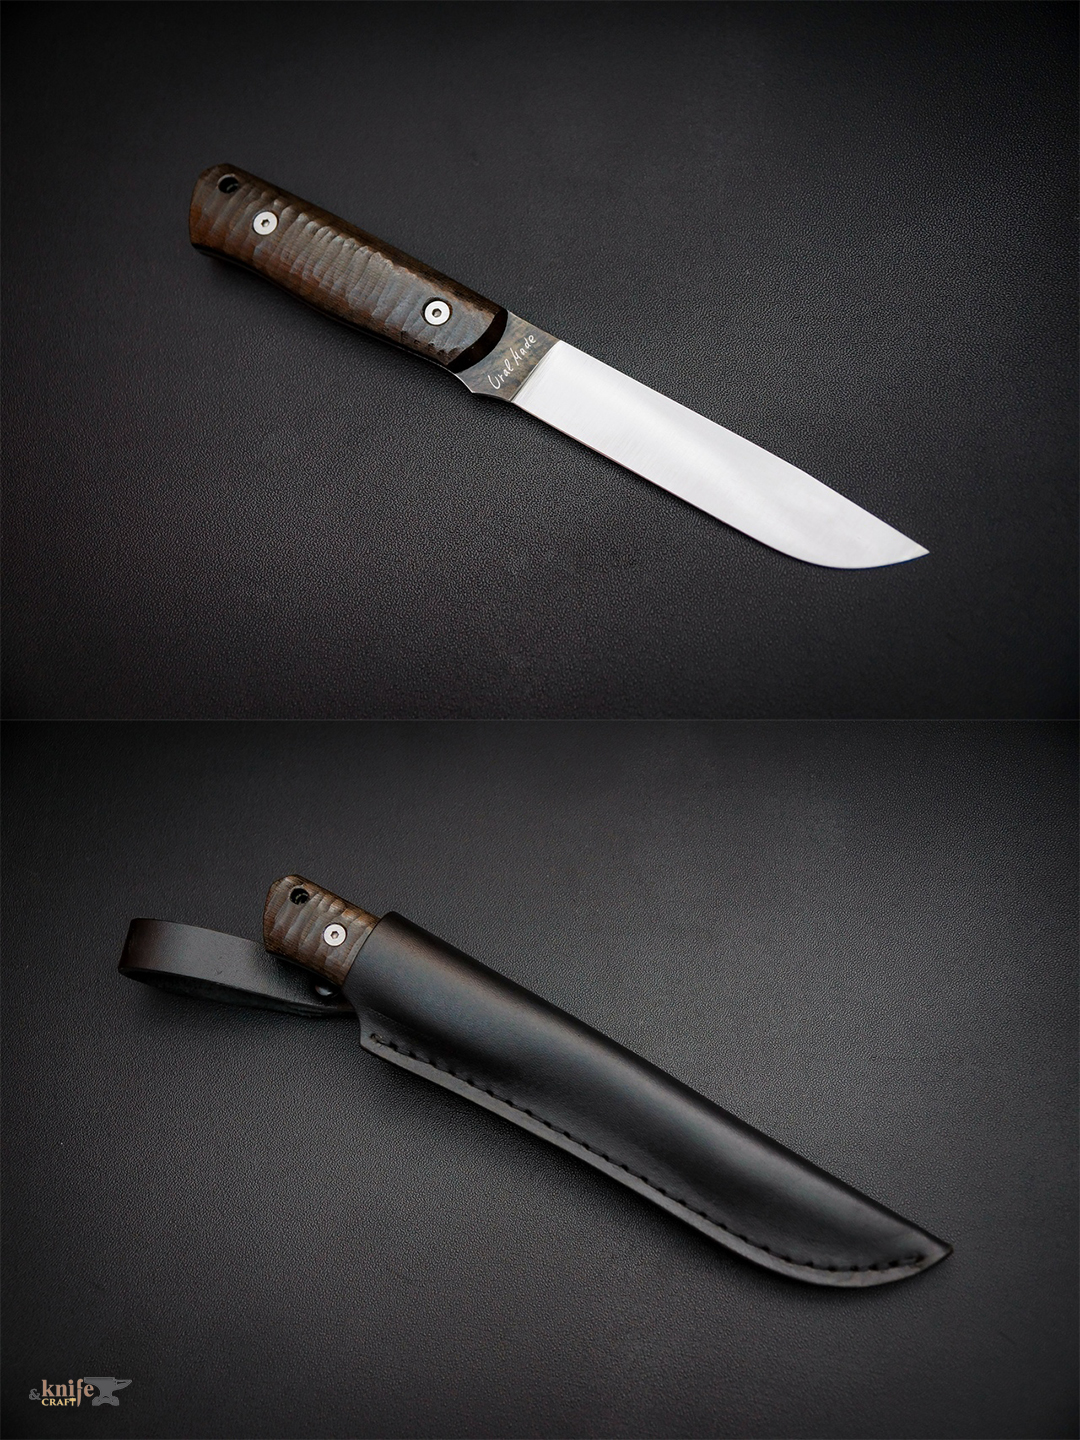 Нож фултанг "Ветеран" из Златоуста, клинок из 90Х13МФК рукоятка из микарты темно коричневая